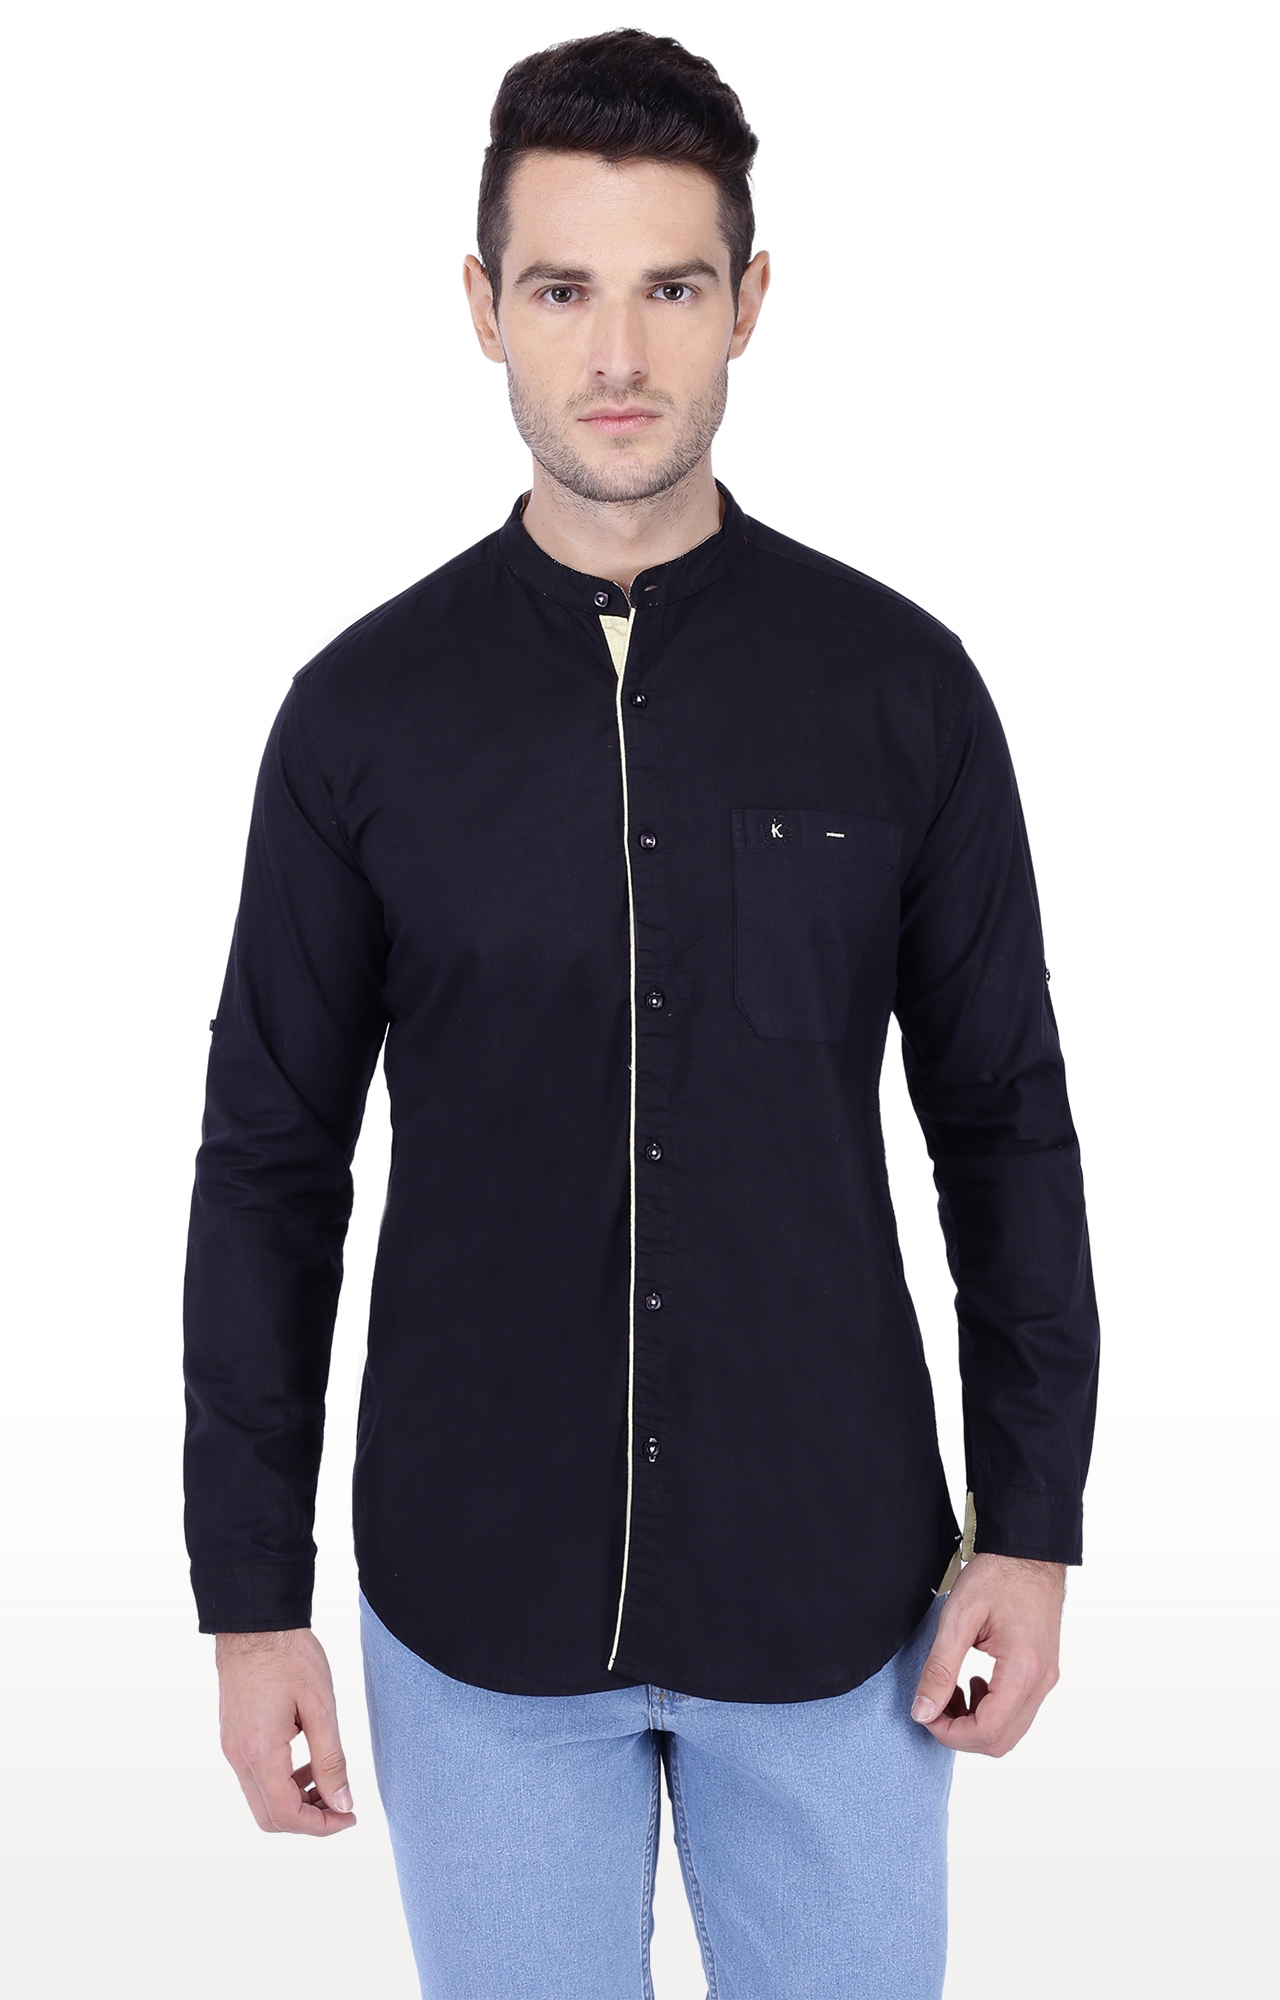 Kuons Avenue Men's Black Linen Cotton Casual Shirt